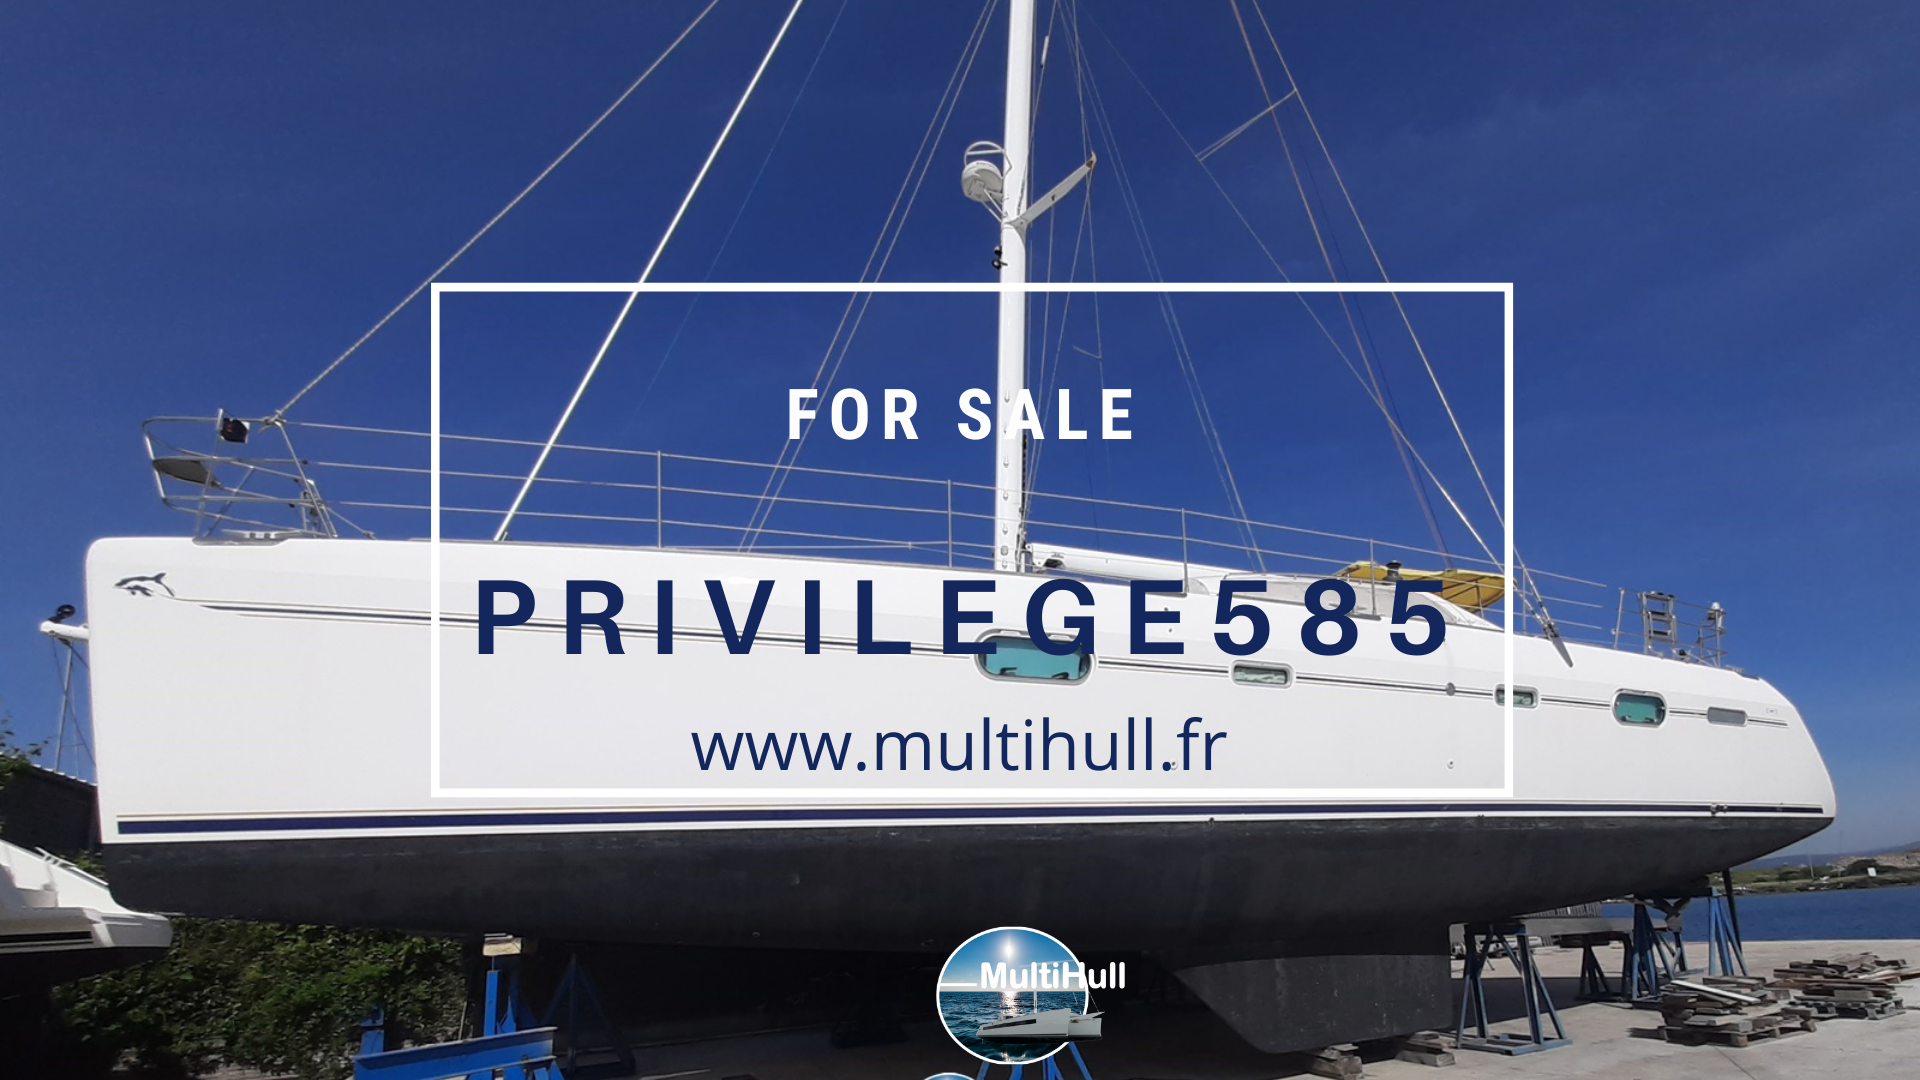 For sale privilege 585